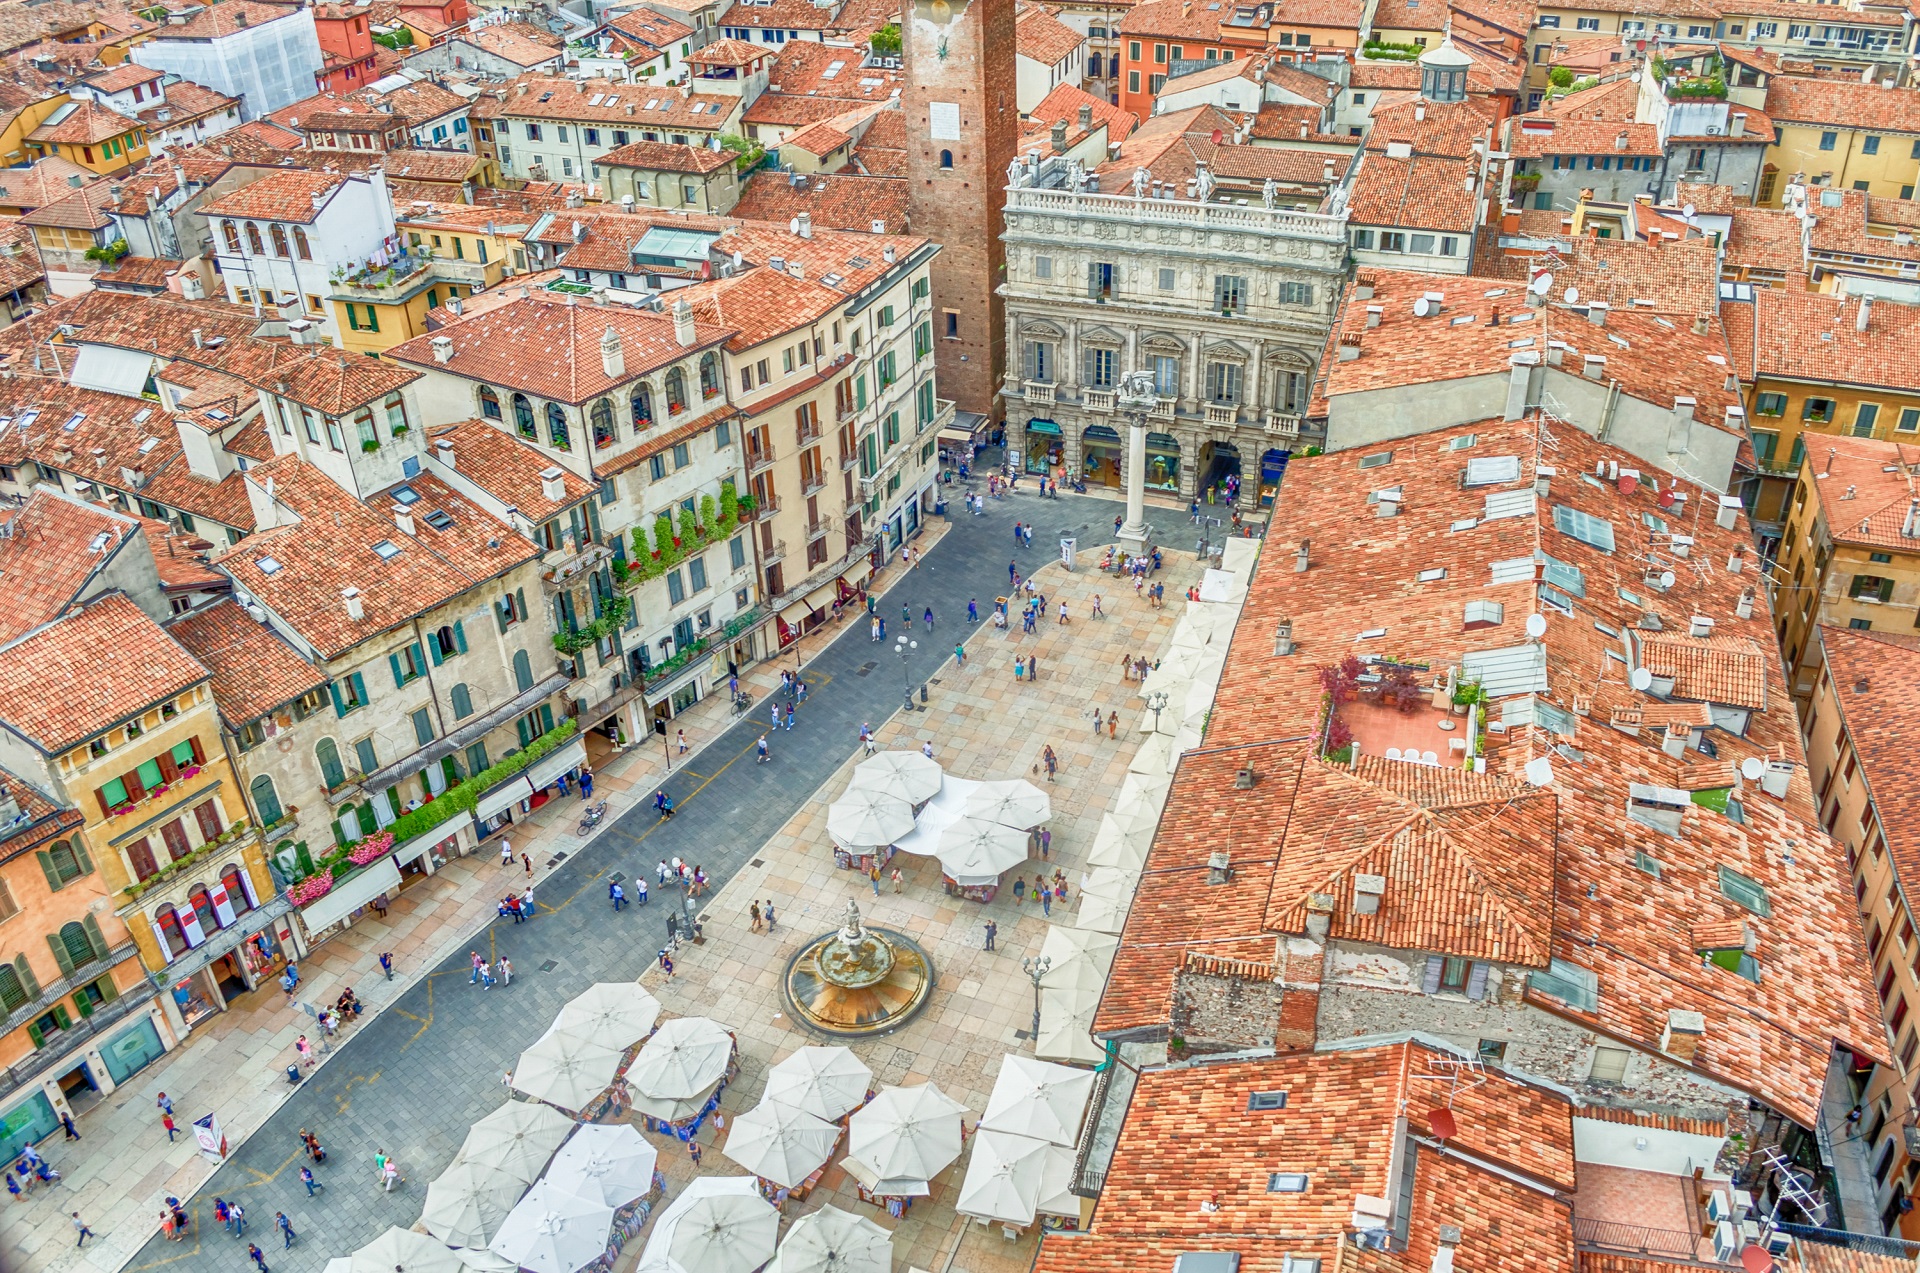 View of the Piazza delle Erbe Verona